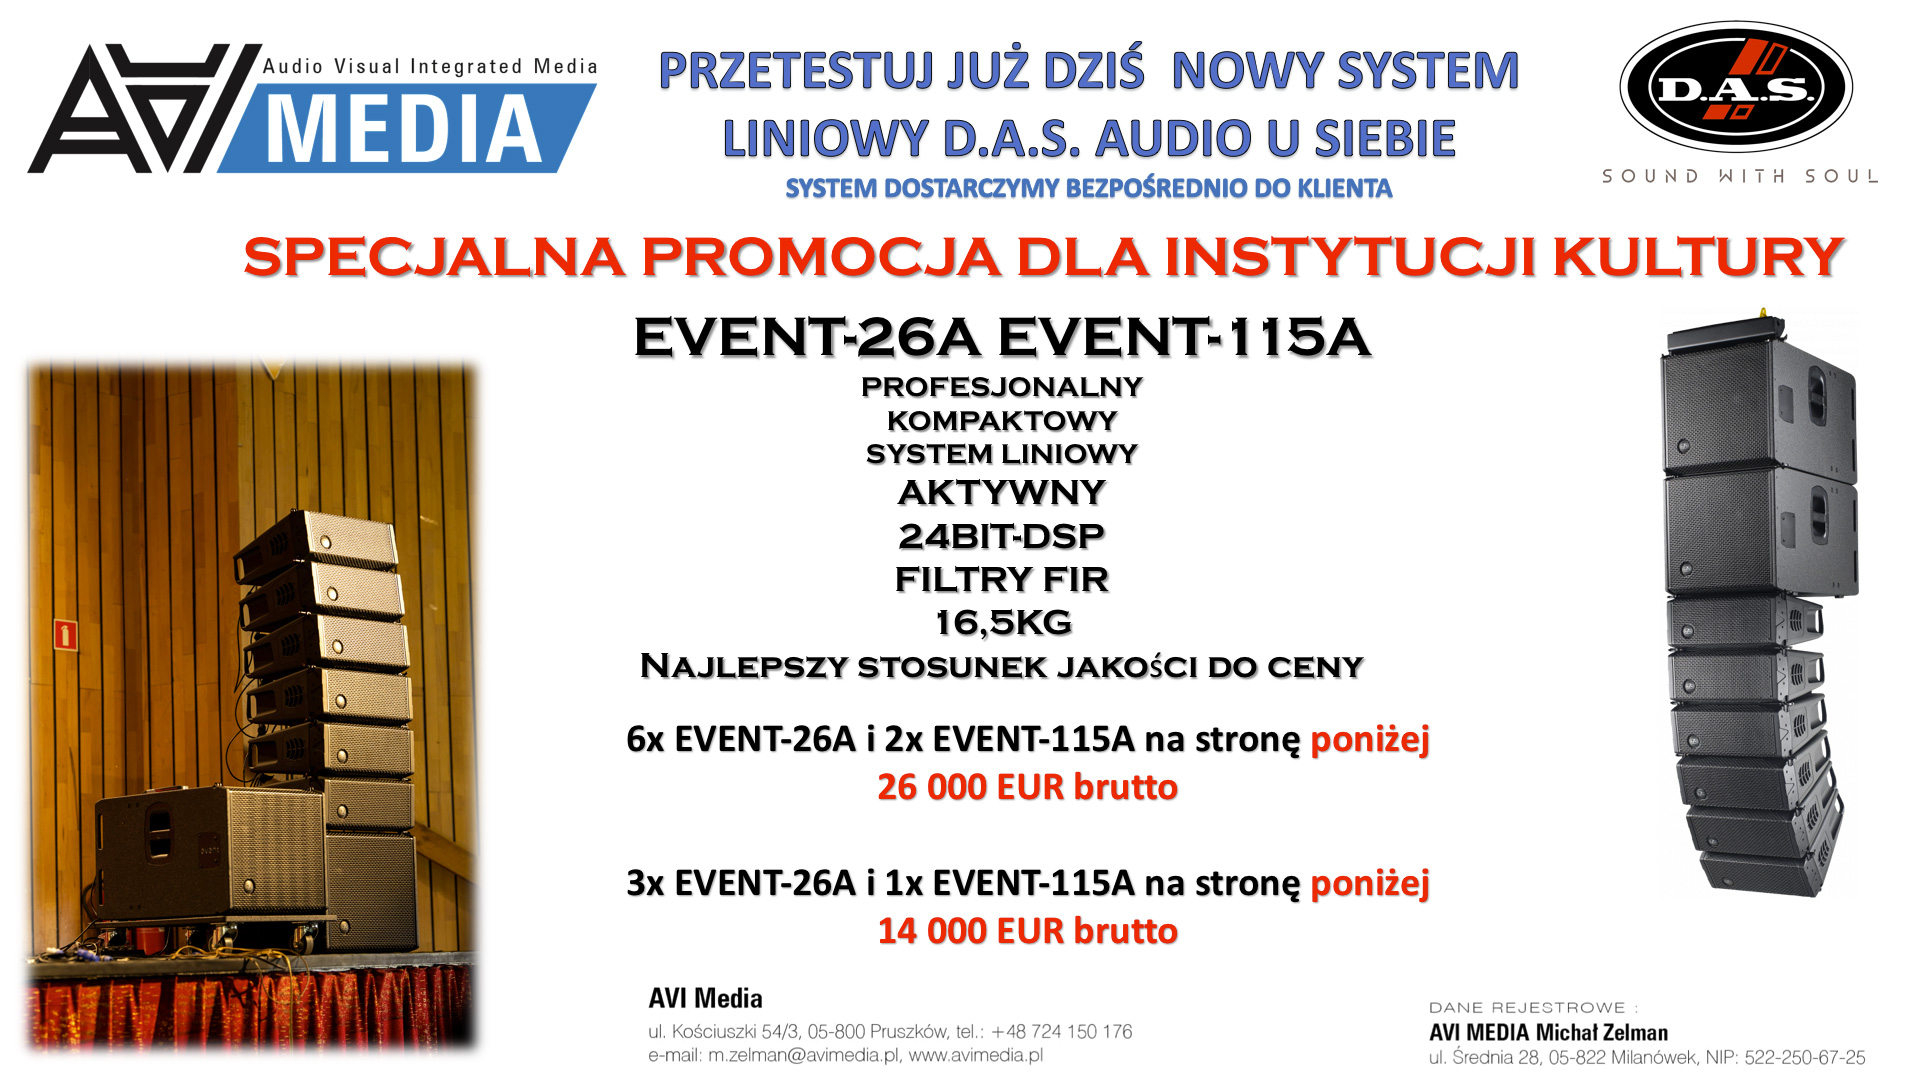 1 DAS Audio Event 26A promocja oferta dla instytucji kultury oferta